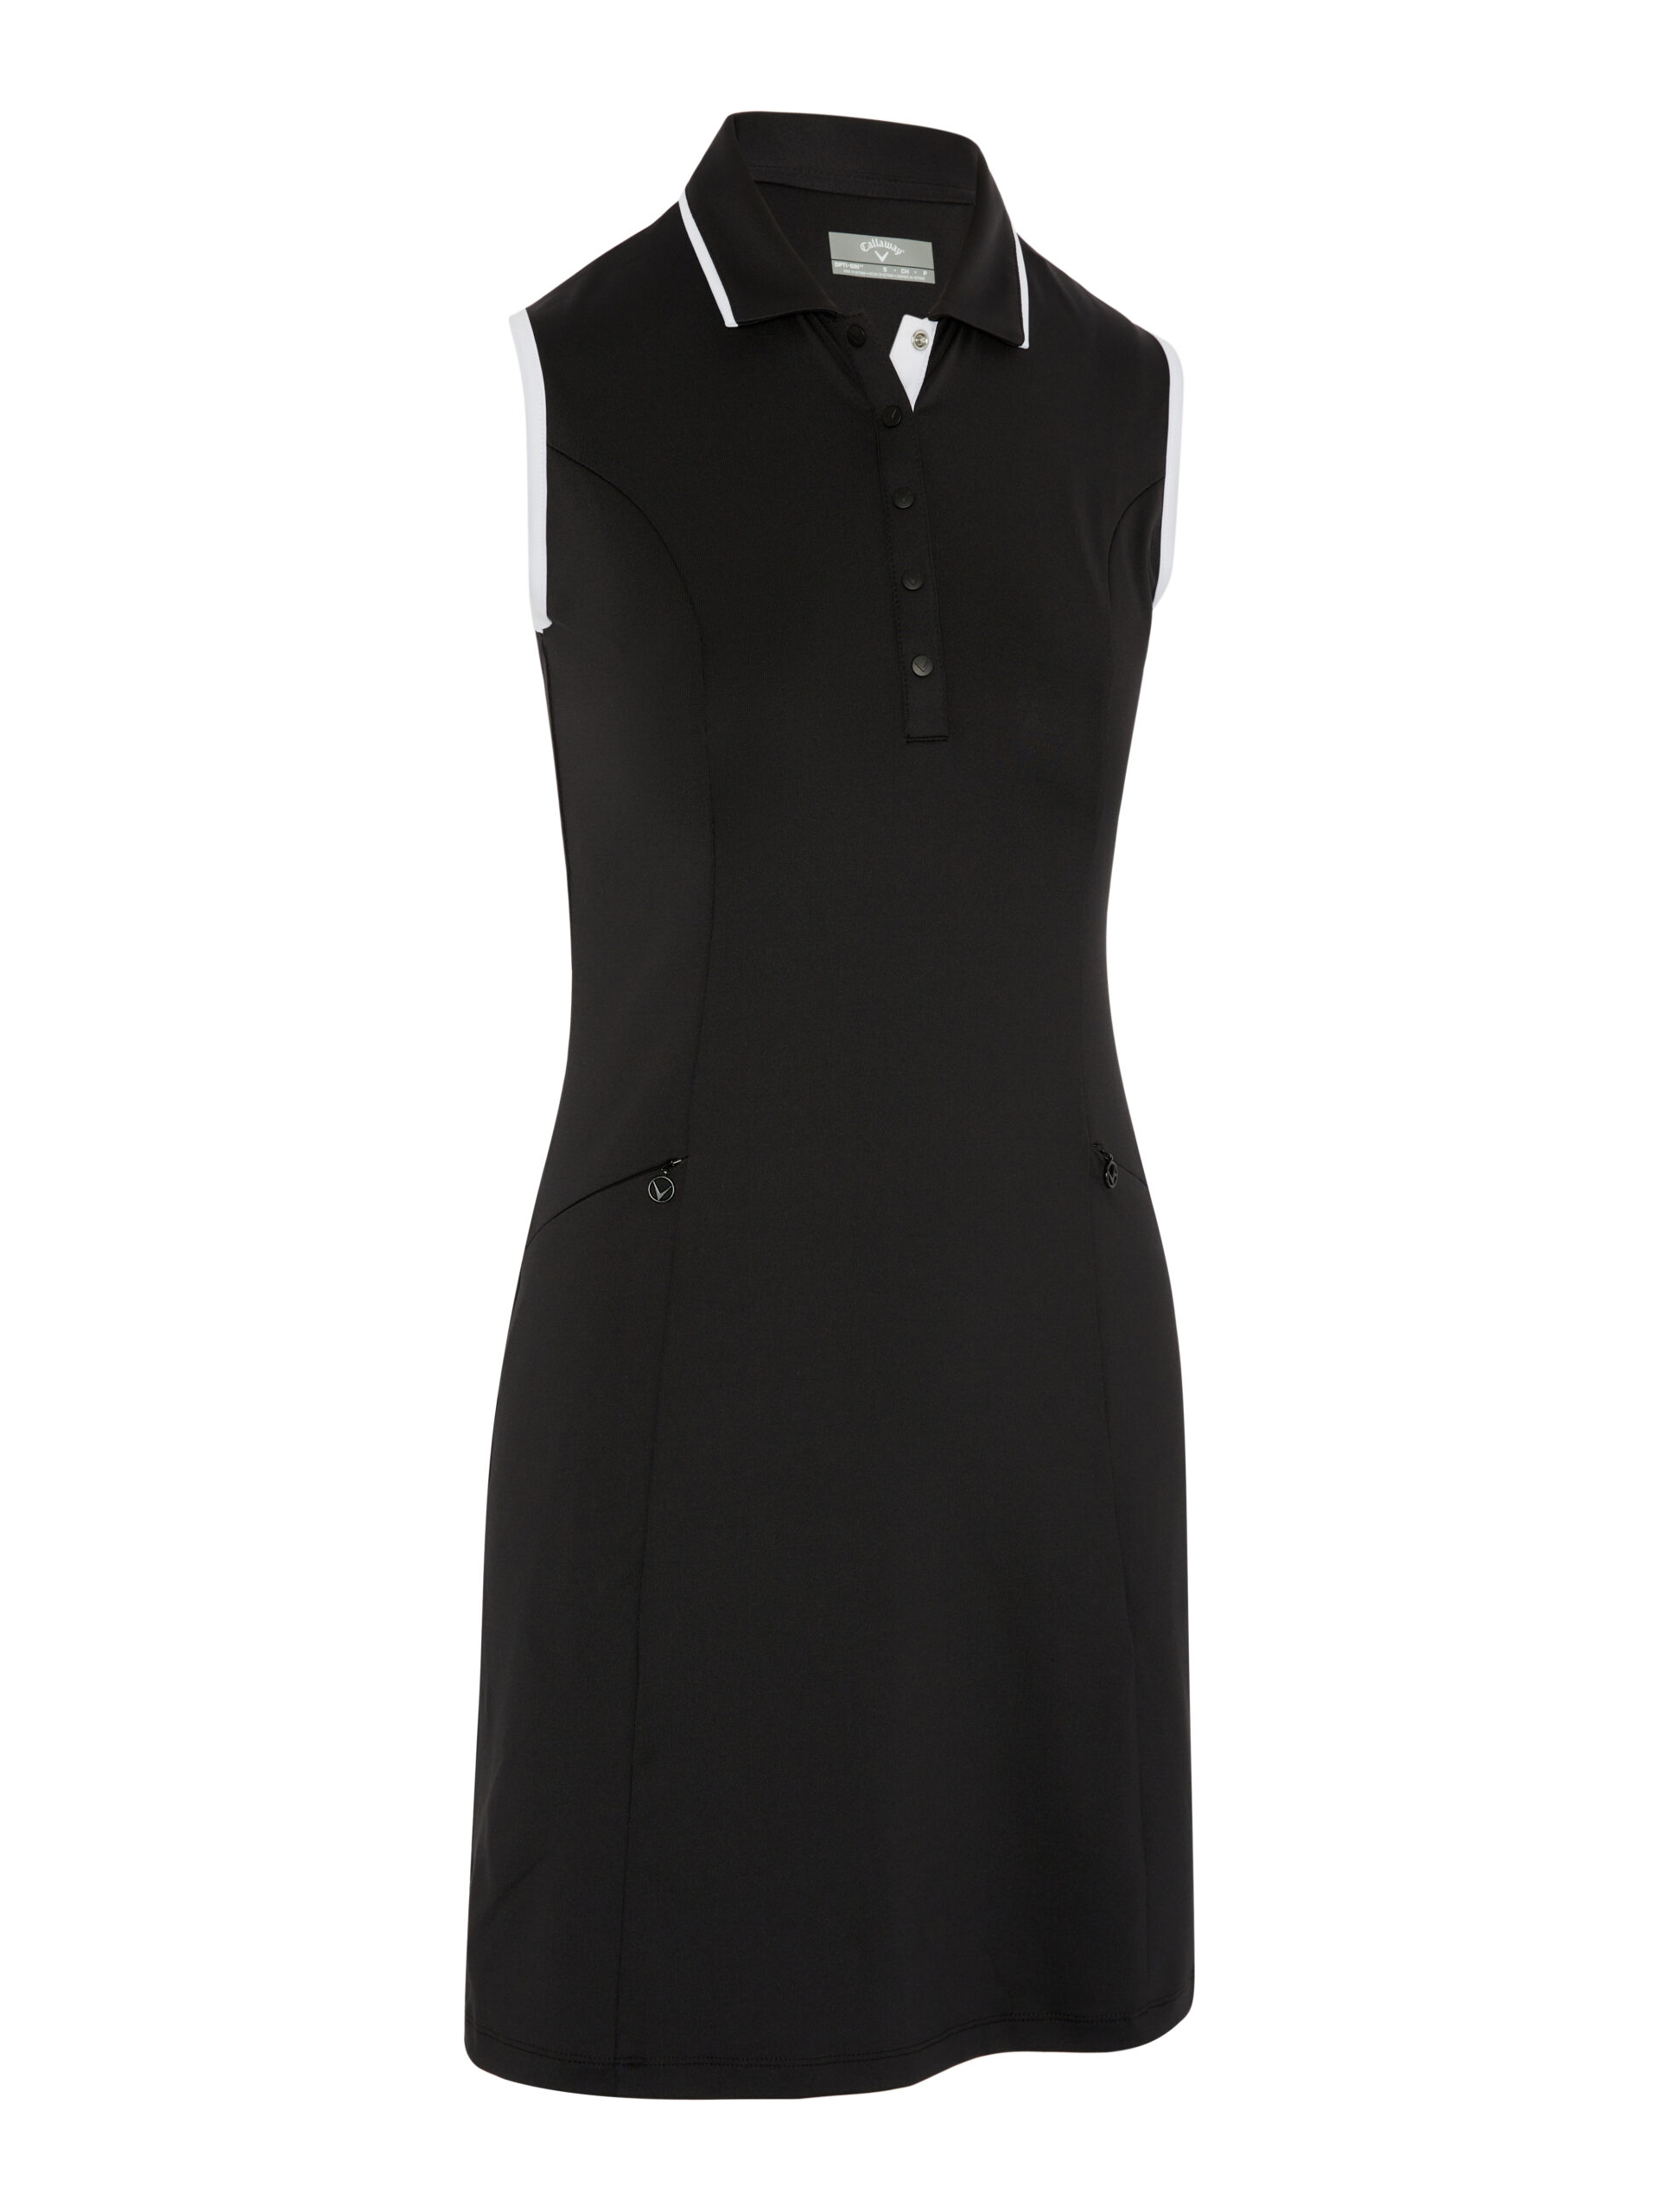 Callaway dámské golfové šaty, černé, vel. XS